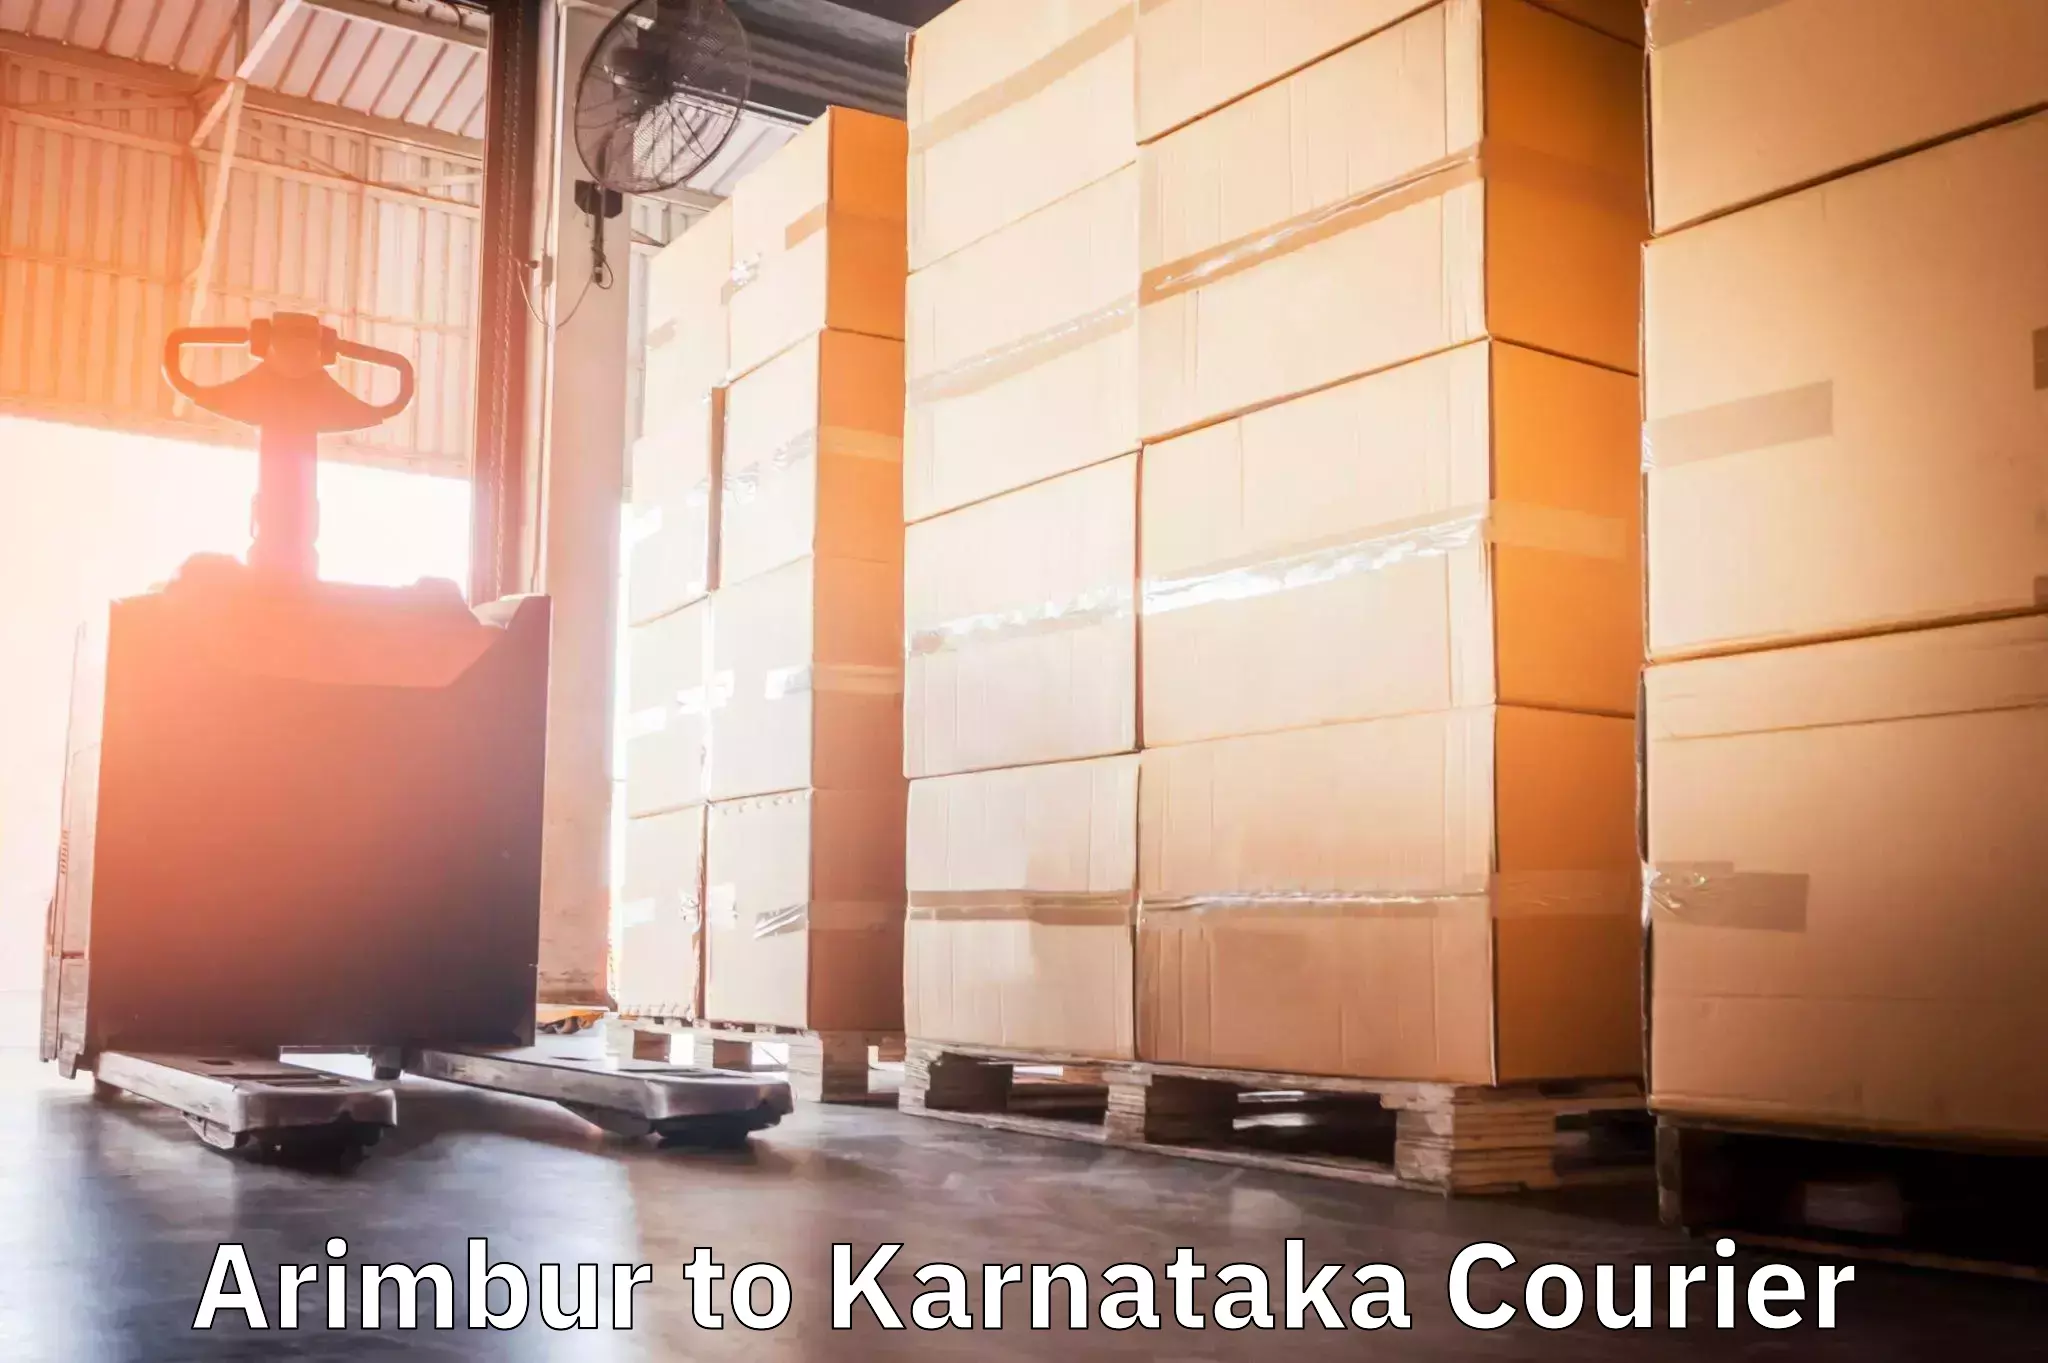 Courier service comparison Arimbur to Mangalore Port